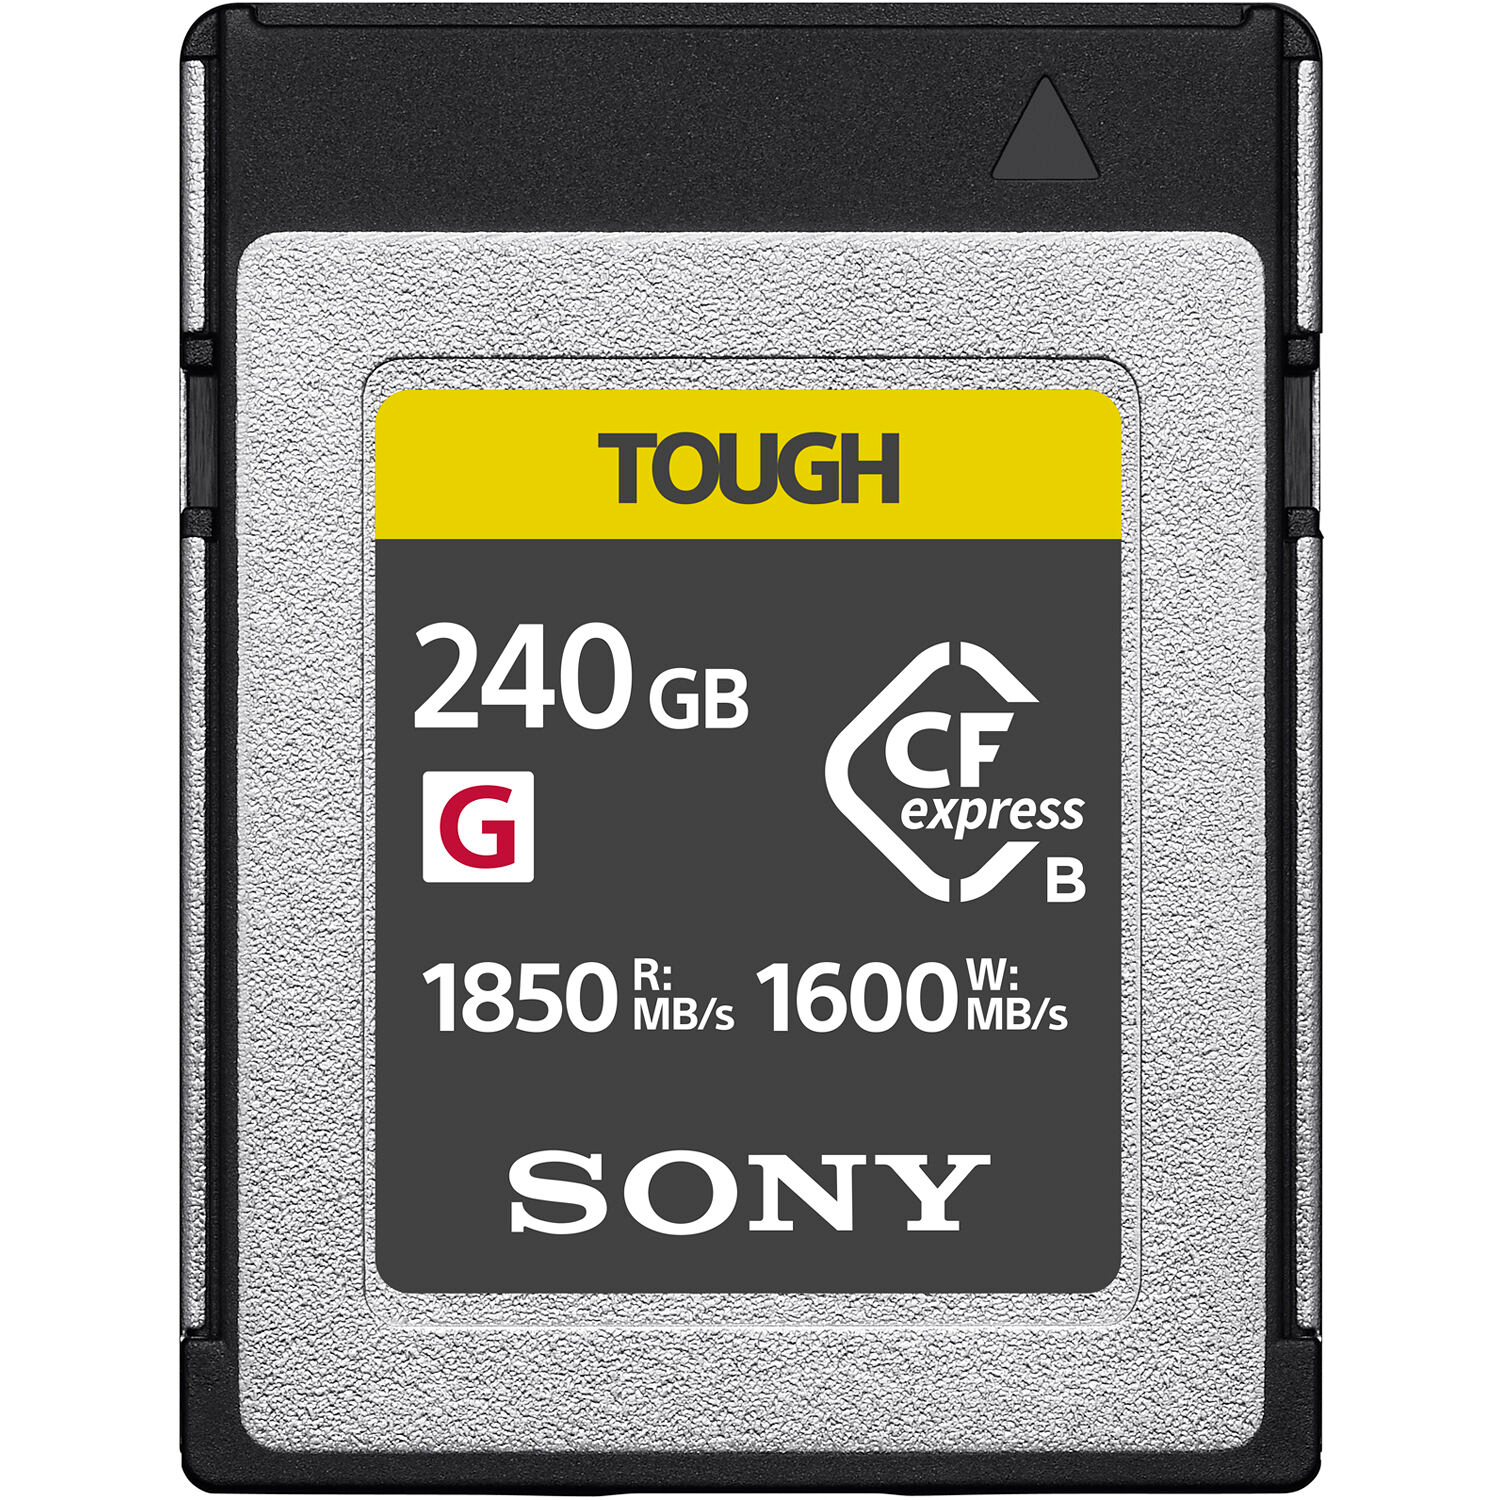 Карта пам`яті Sony CFexpress Type B 240GB R1850/W1600MB/s Tough (CEBG240T.CE7)фото1